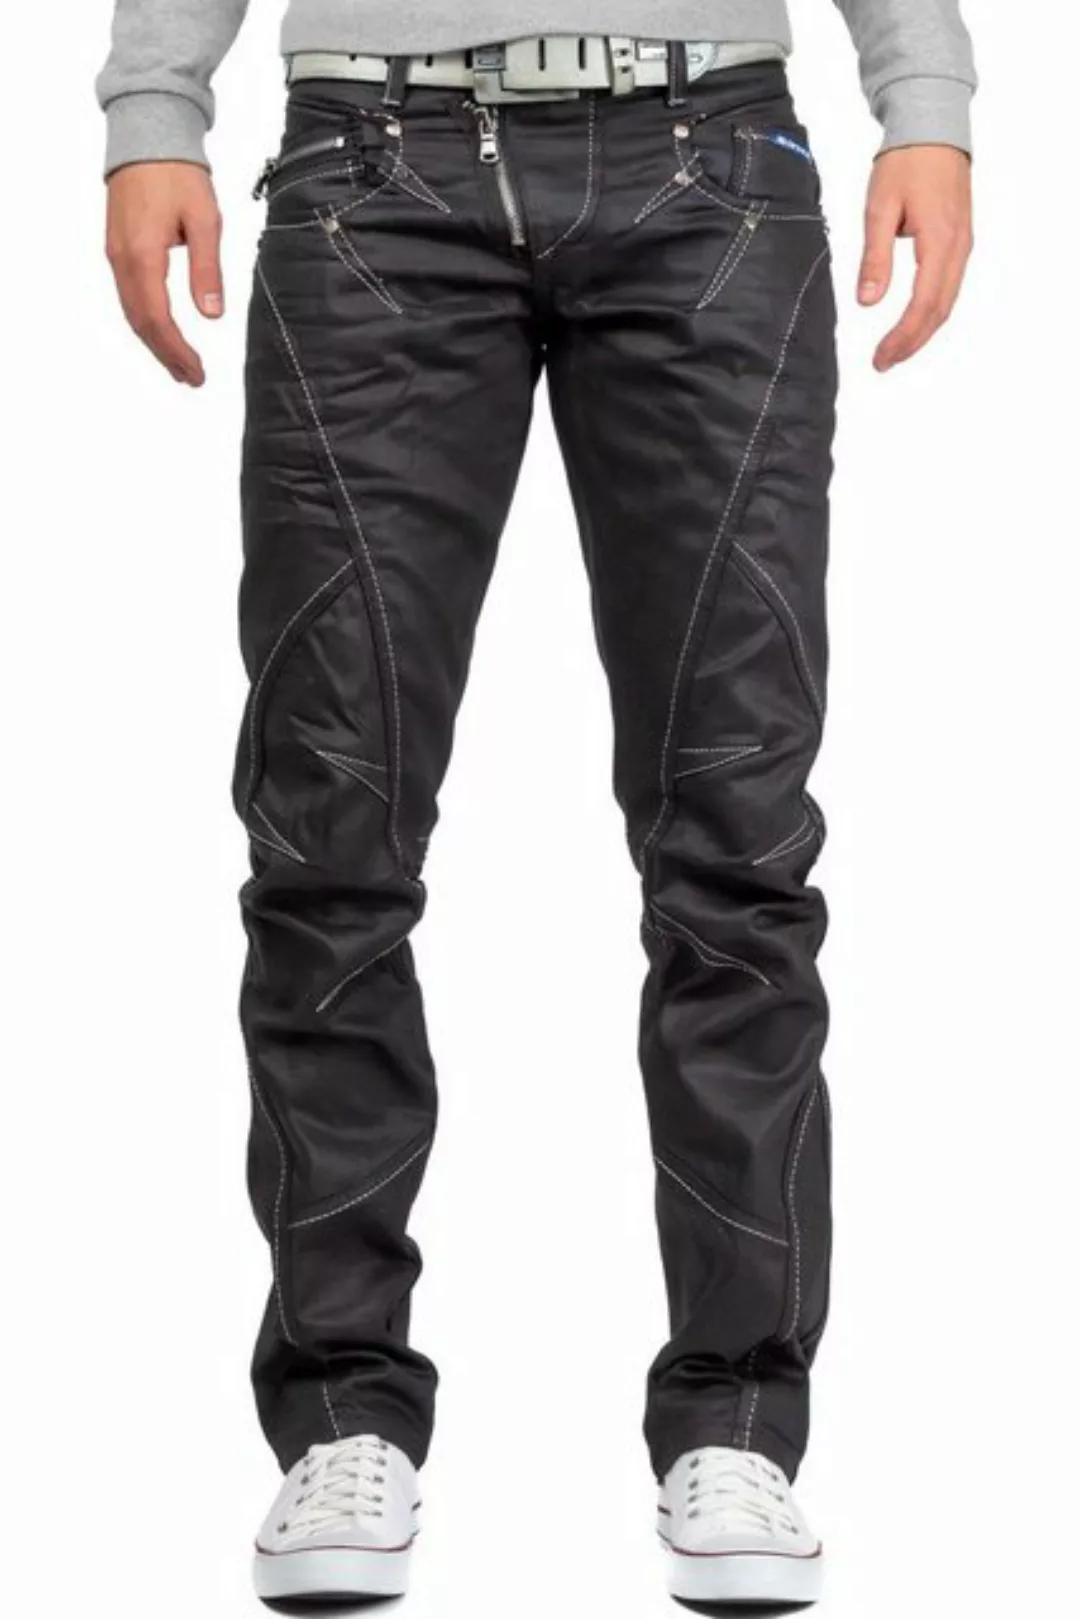 Cipo & Baxx 5-Pocket-Jeans Hose BA-C0812 in Schwarz Glänzend mit weißen Näh günstig online kaufen